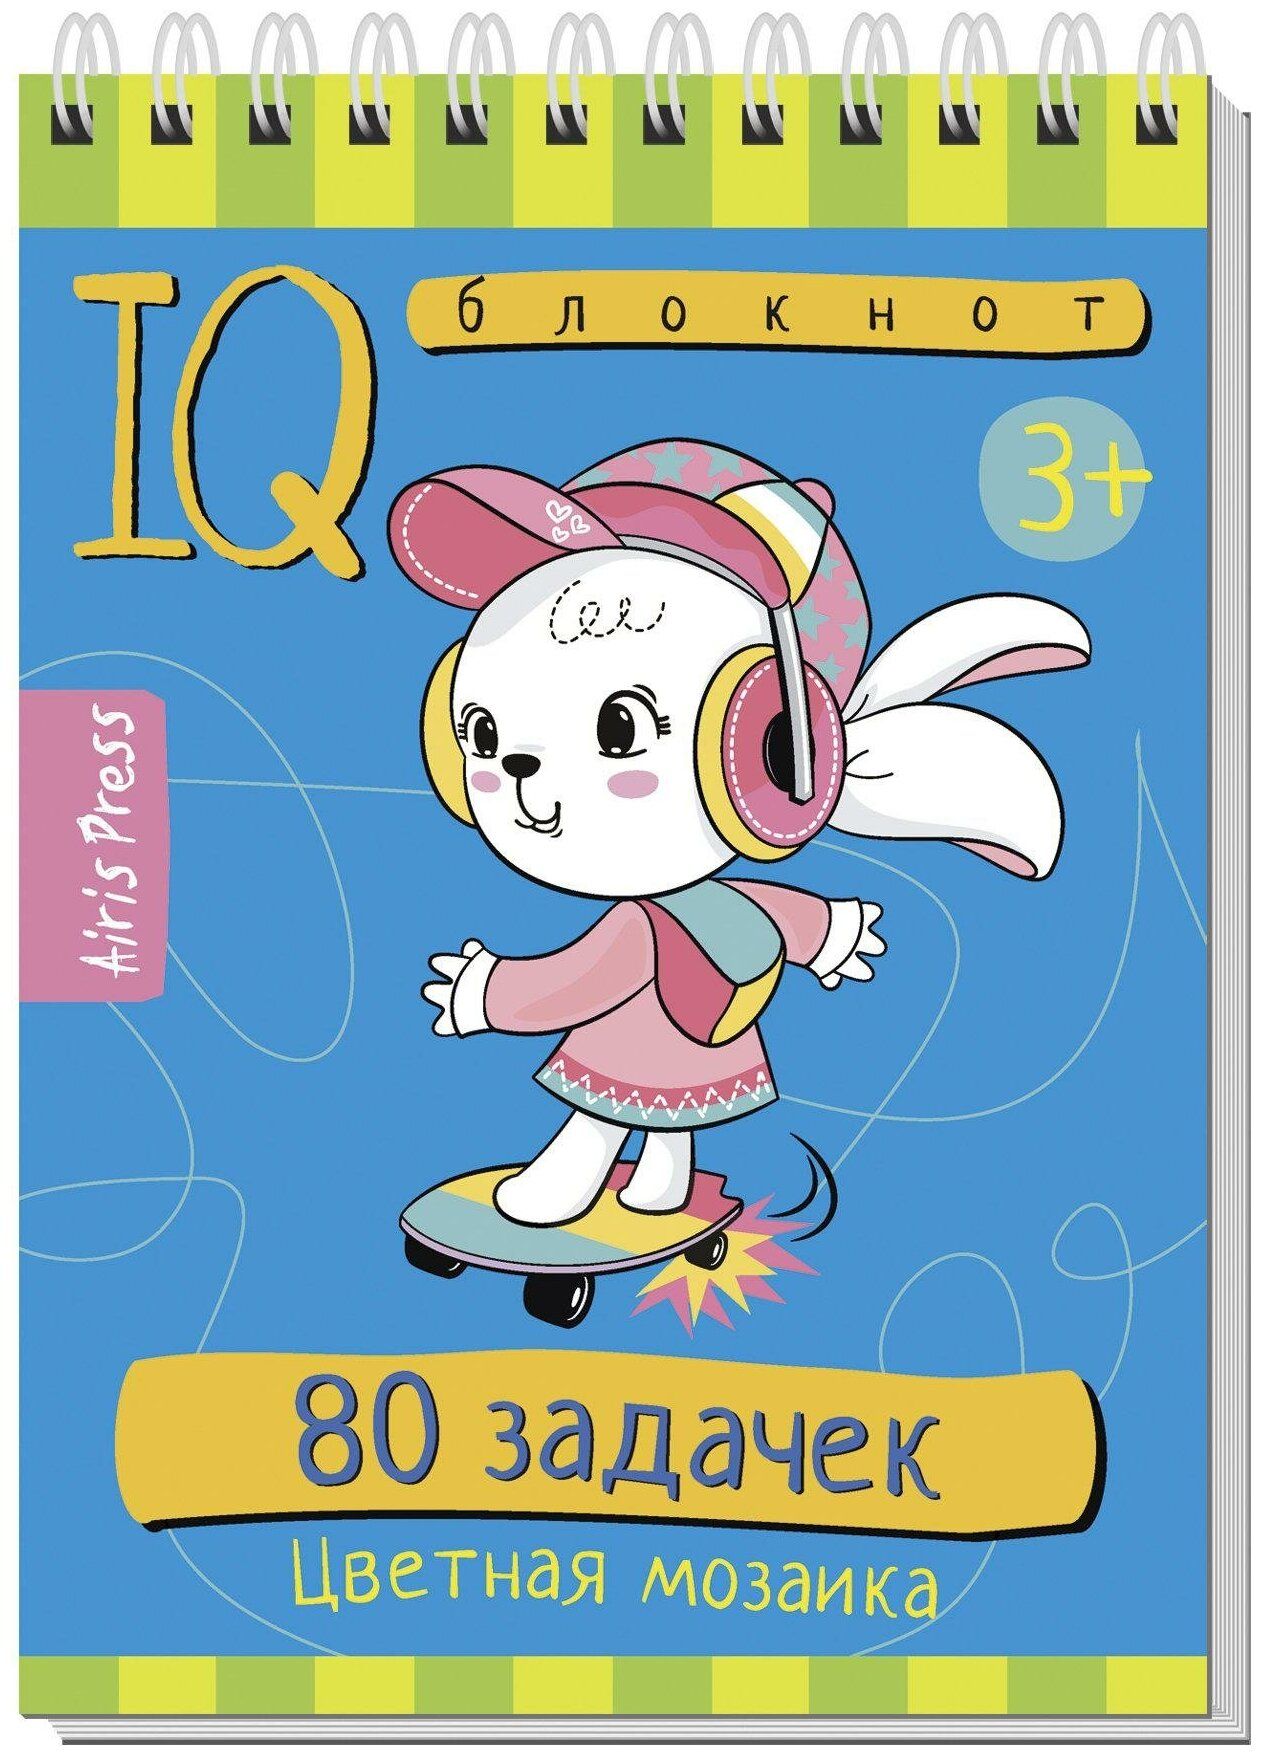 IQ блокнот Айрис-пресс 80 задачек. Цветная мозаика 3+ арт.28401 настольная игра айрис пресс iq мемори что внутри